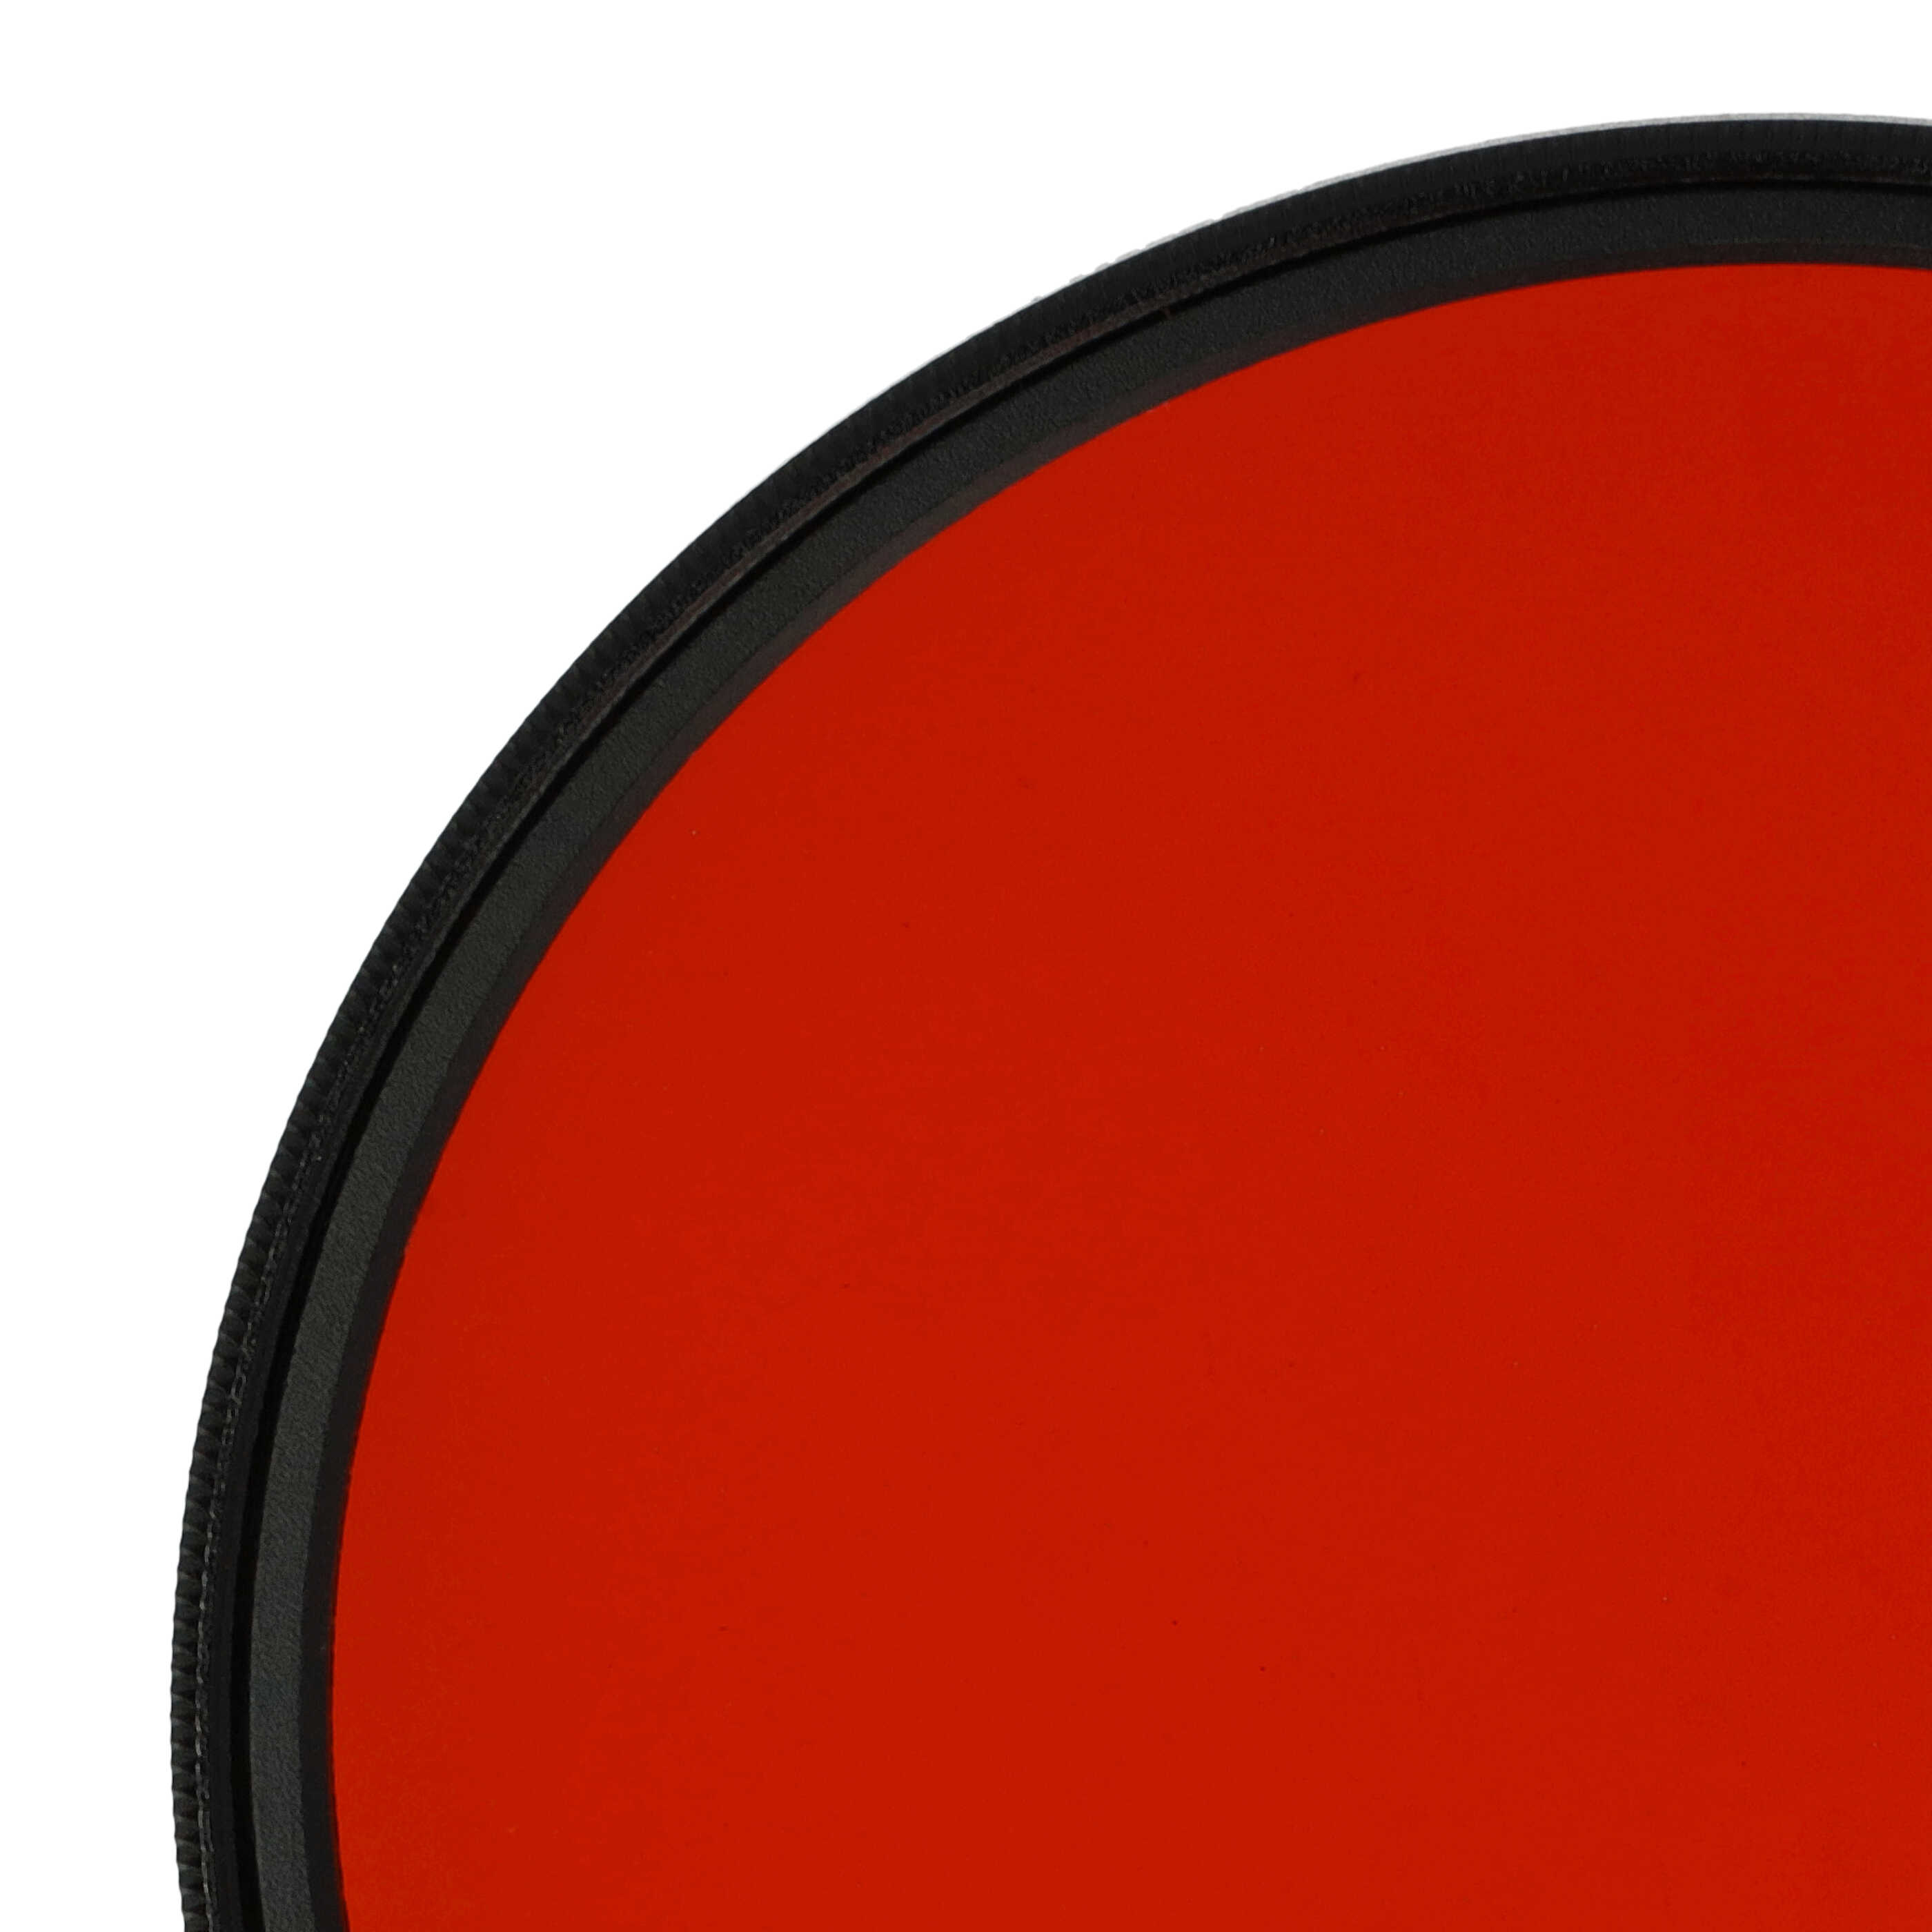 Filtro de color para objetivo de cámara con rosca de filtro de 77 mm - Filtro naranja